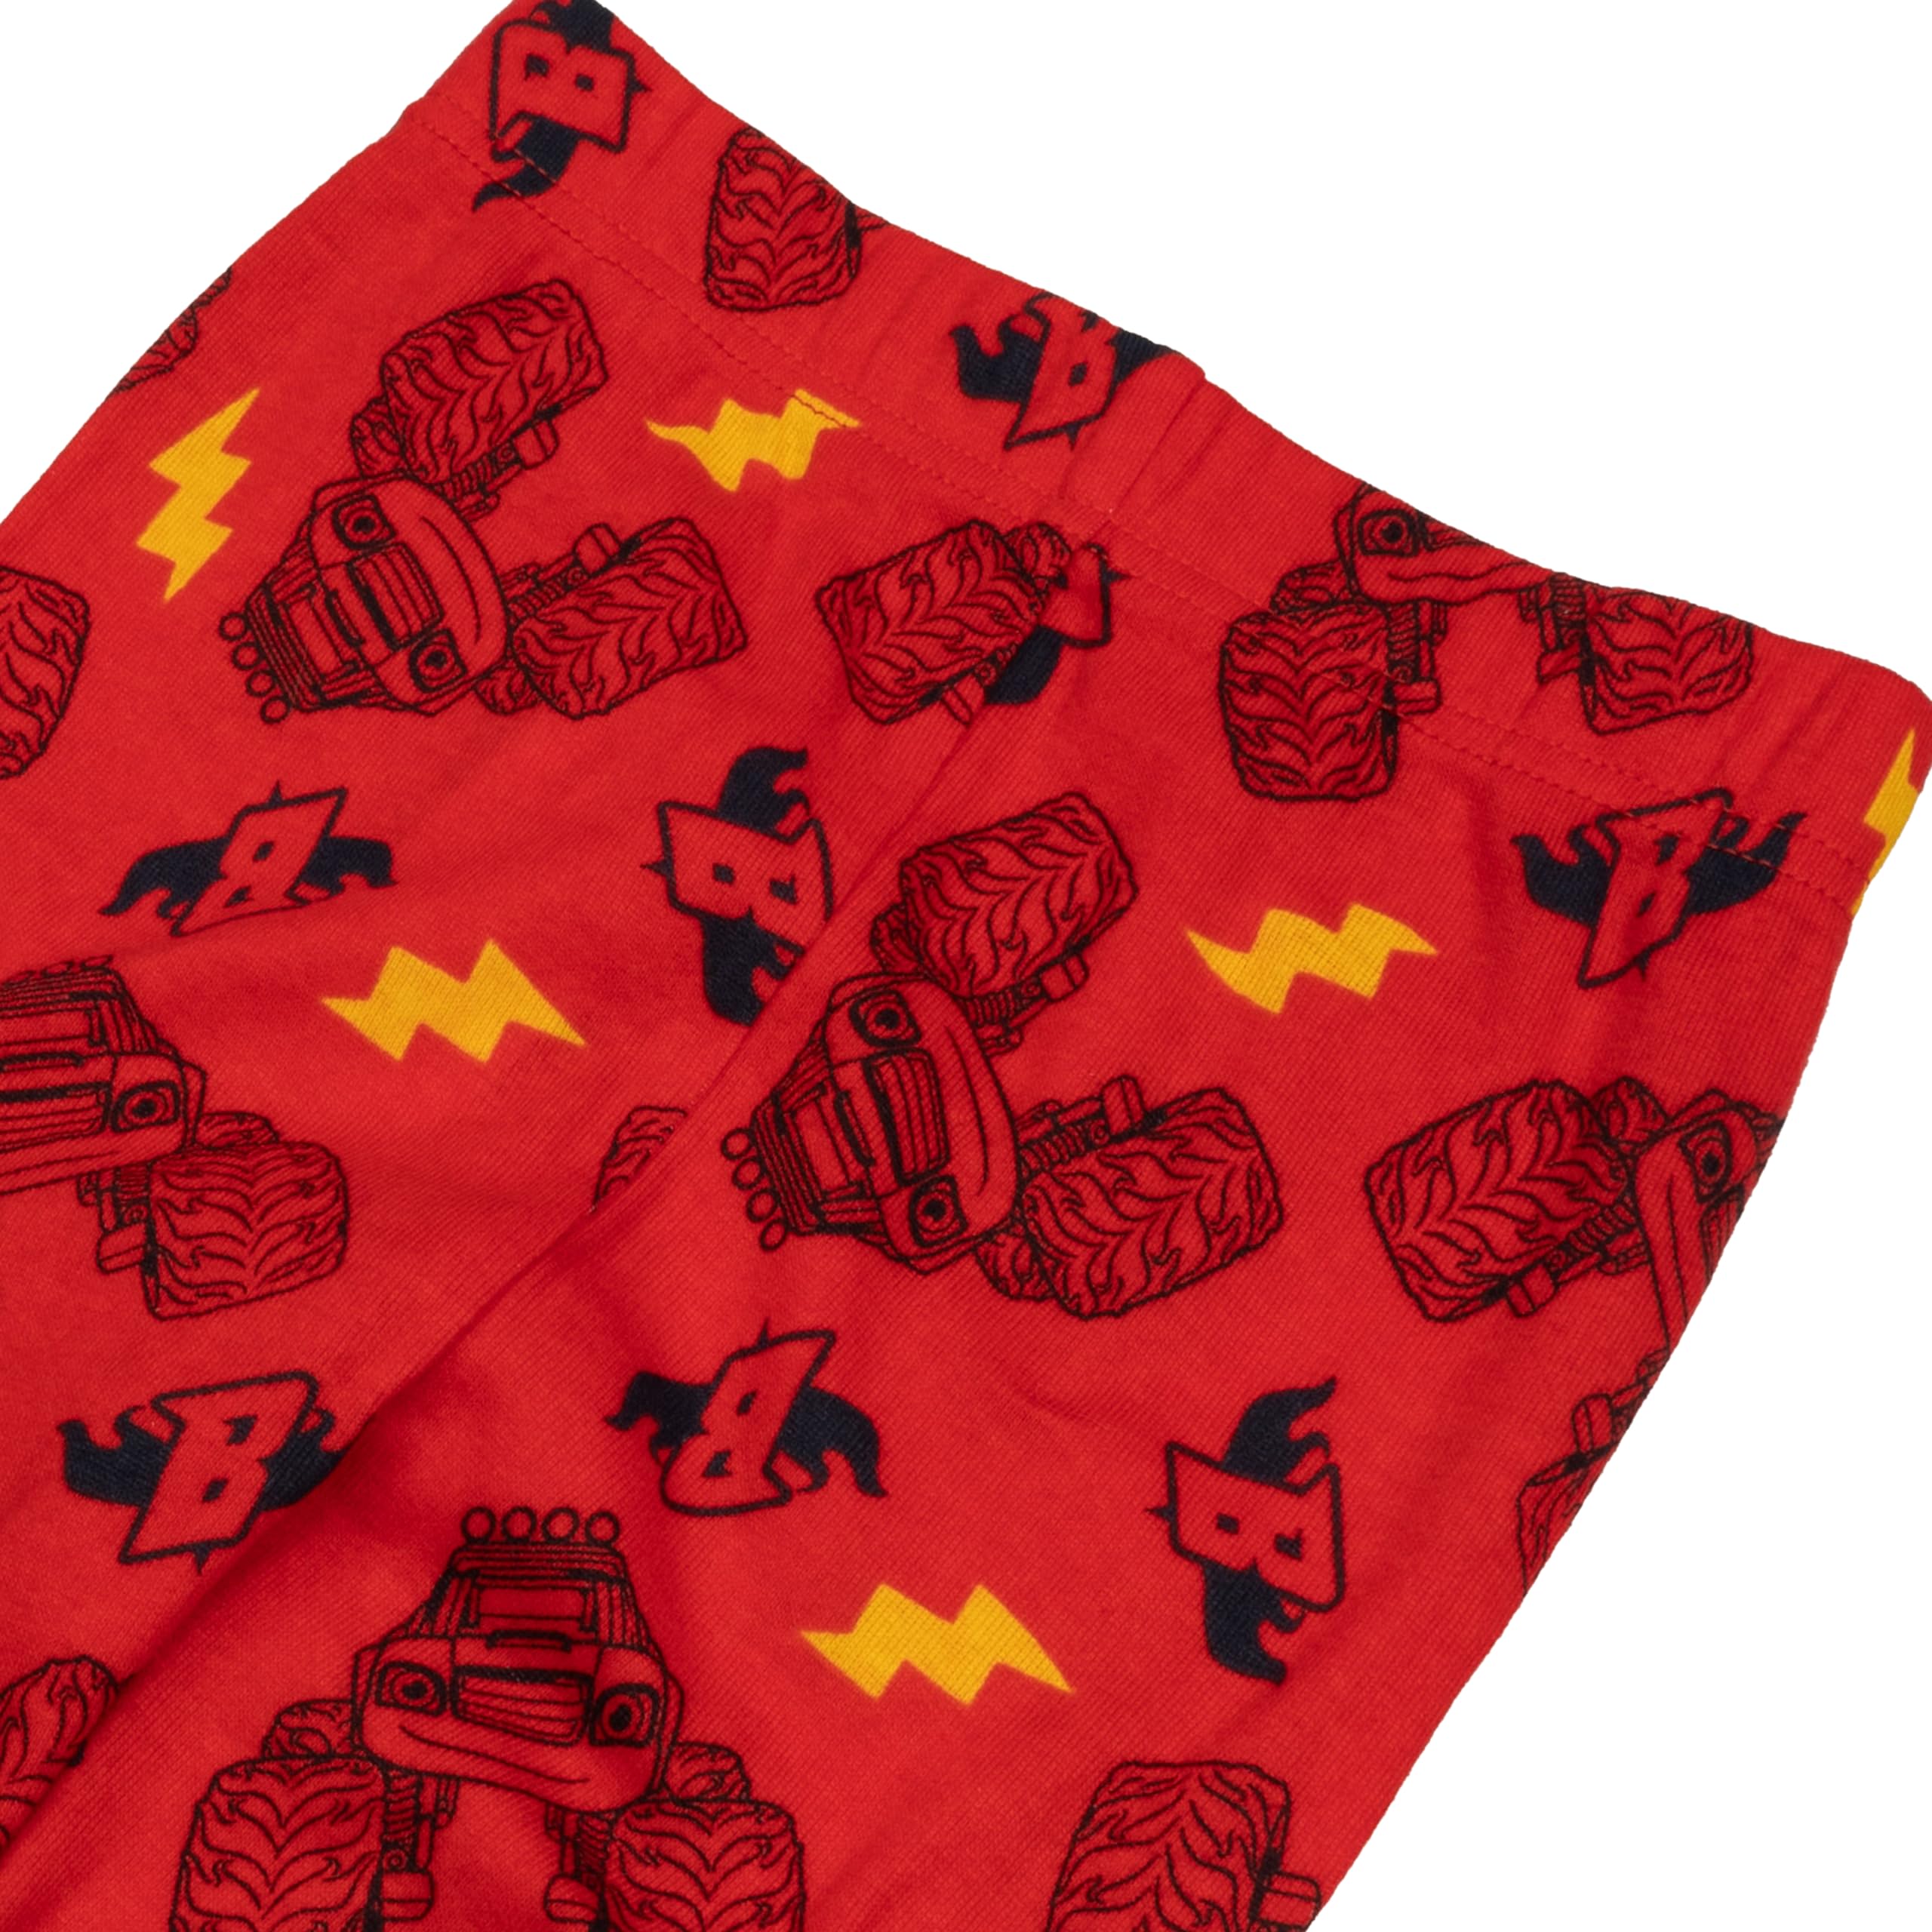 Nickelodeon Boys' 4-Piece Snug-fit Cotton Pajama Set